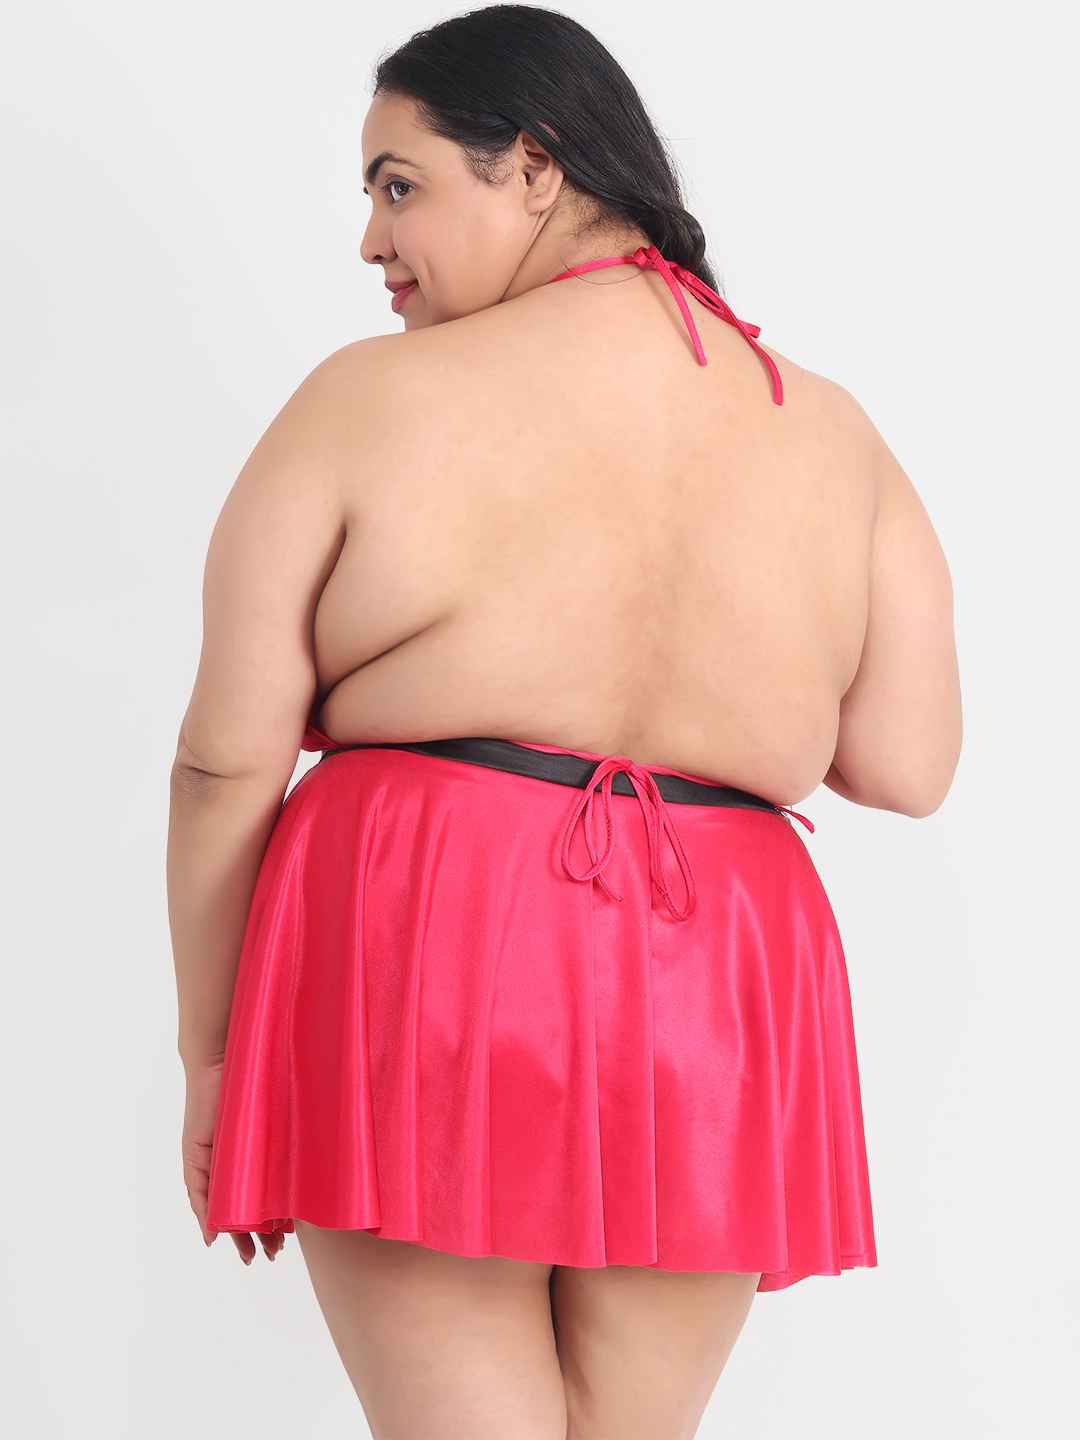 Plus Size Sexy 3 Piece Babydoll Bikini Dress for Honeymoon 203C